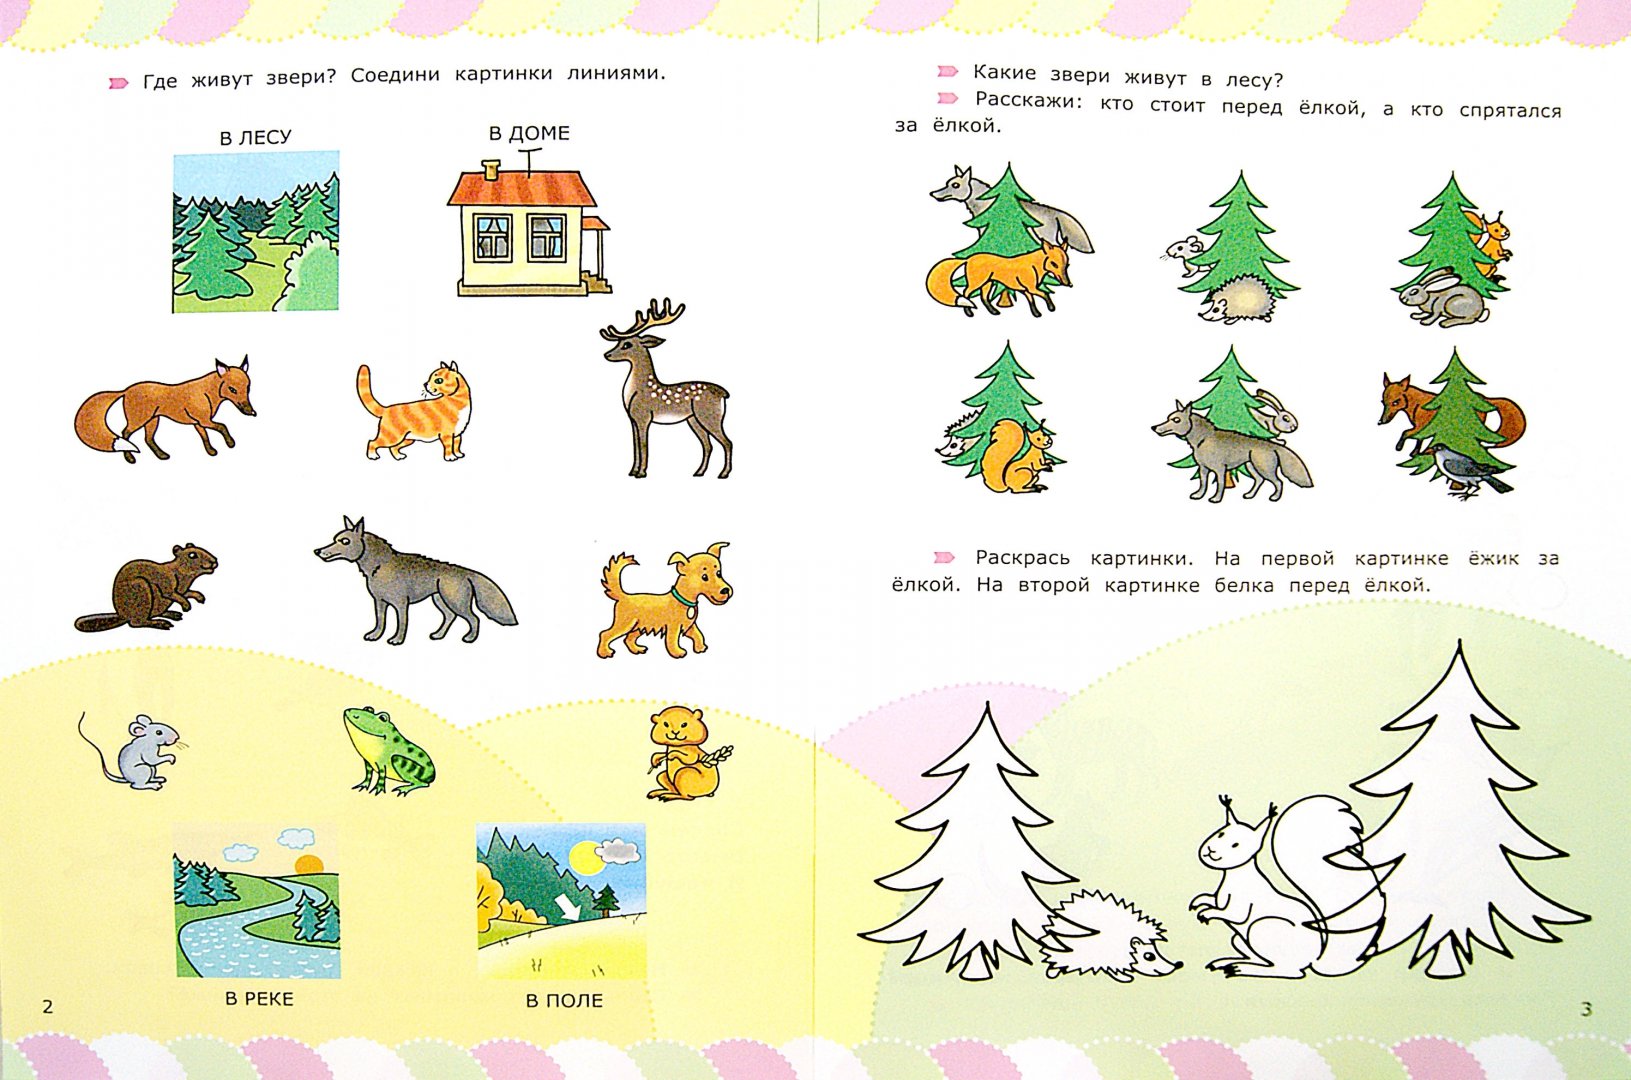 Иллюстрация 1 из 3 для Животные со стихами и наклейками. 5+. ФГОС ДО - Циновская, Циновская | Лабиринт - книги. Источник: Лабиринт